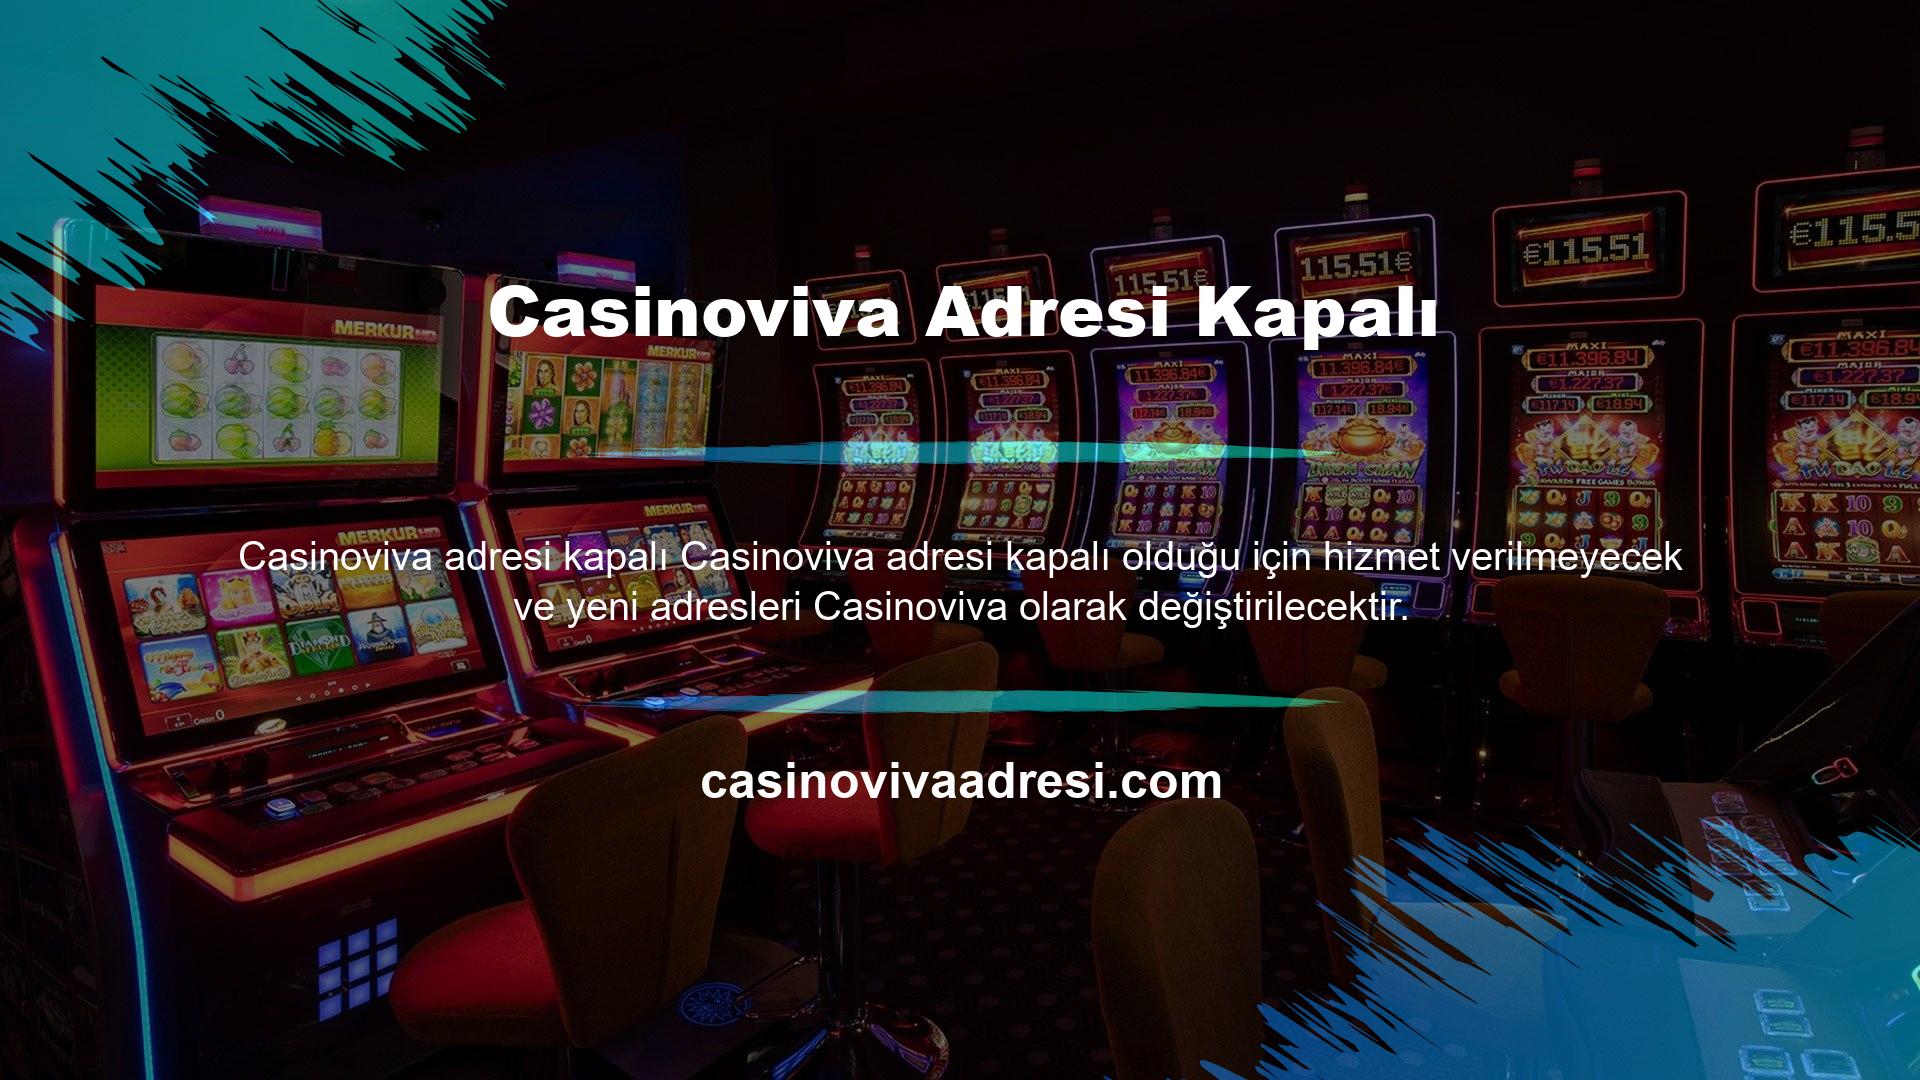 Casinoviva online bahis siteleri ve casino siteleri başta futbol, ​​diğer spor bahisleri, canlı bahis, casino ve canlı casino, poker ve diğer sanal spor bahisleri olmak üzere dilde hizmet sunmaktadır